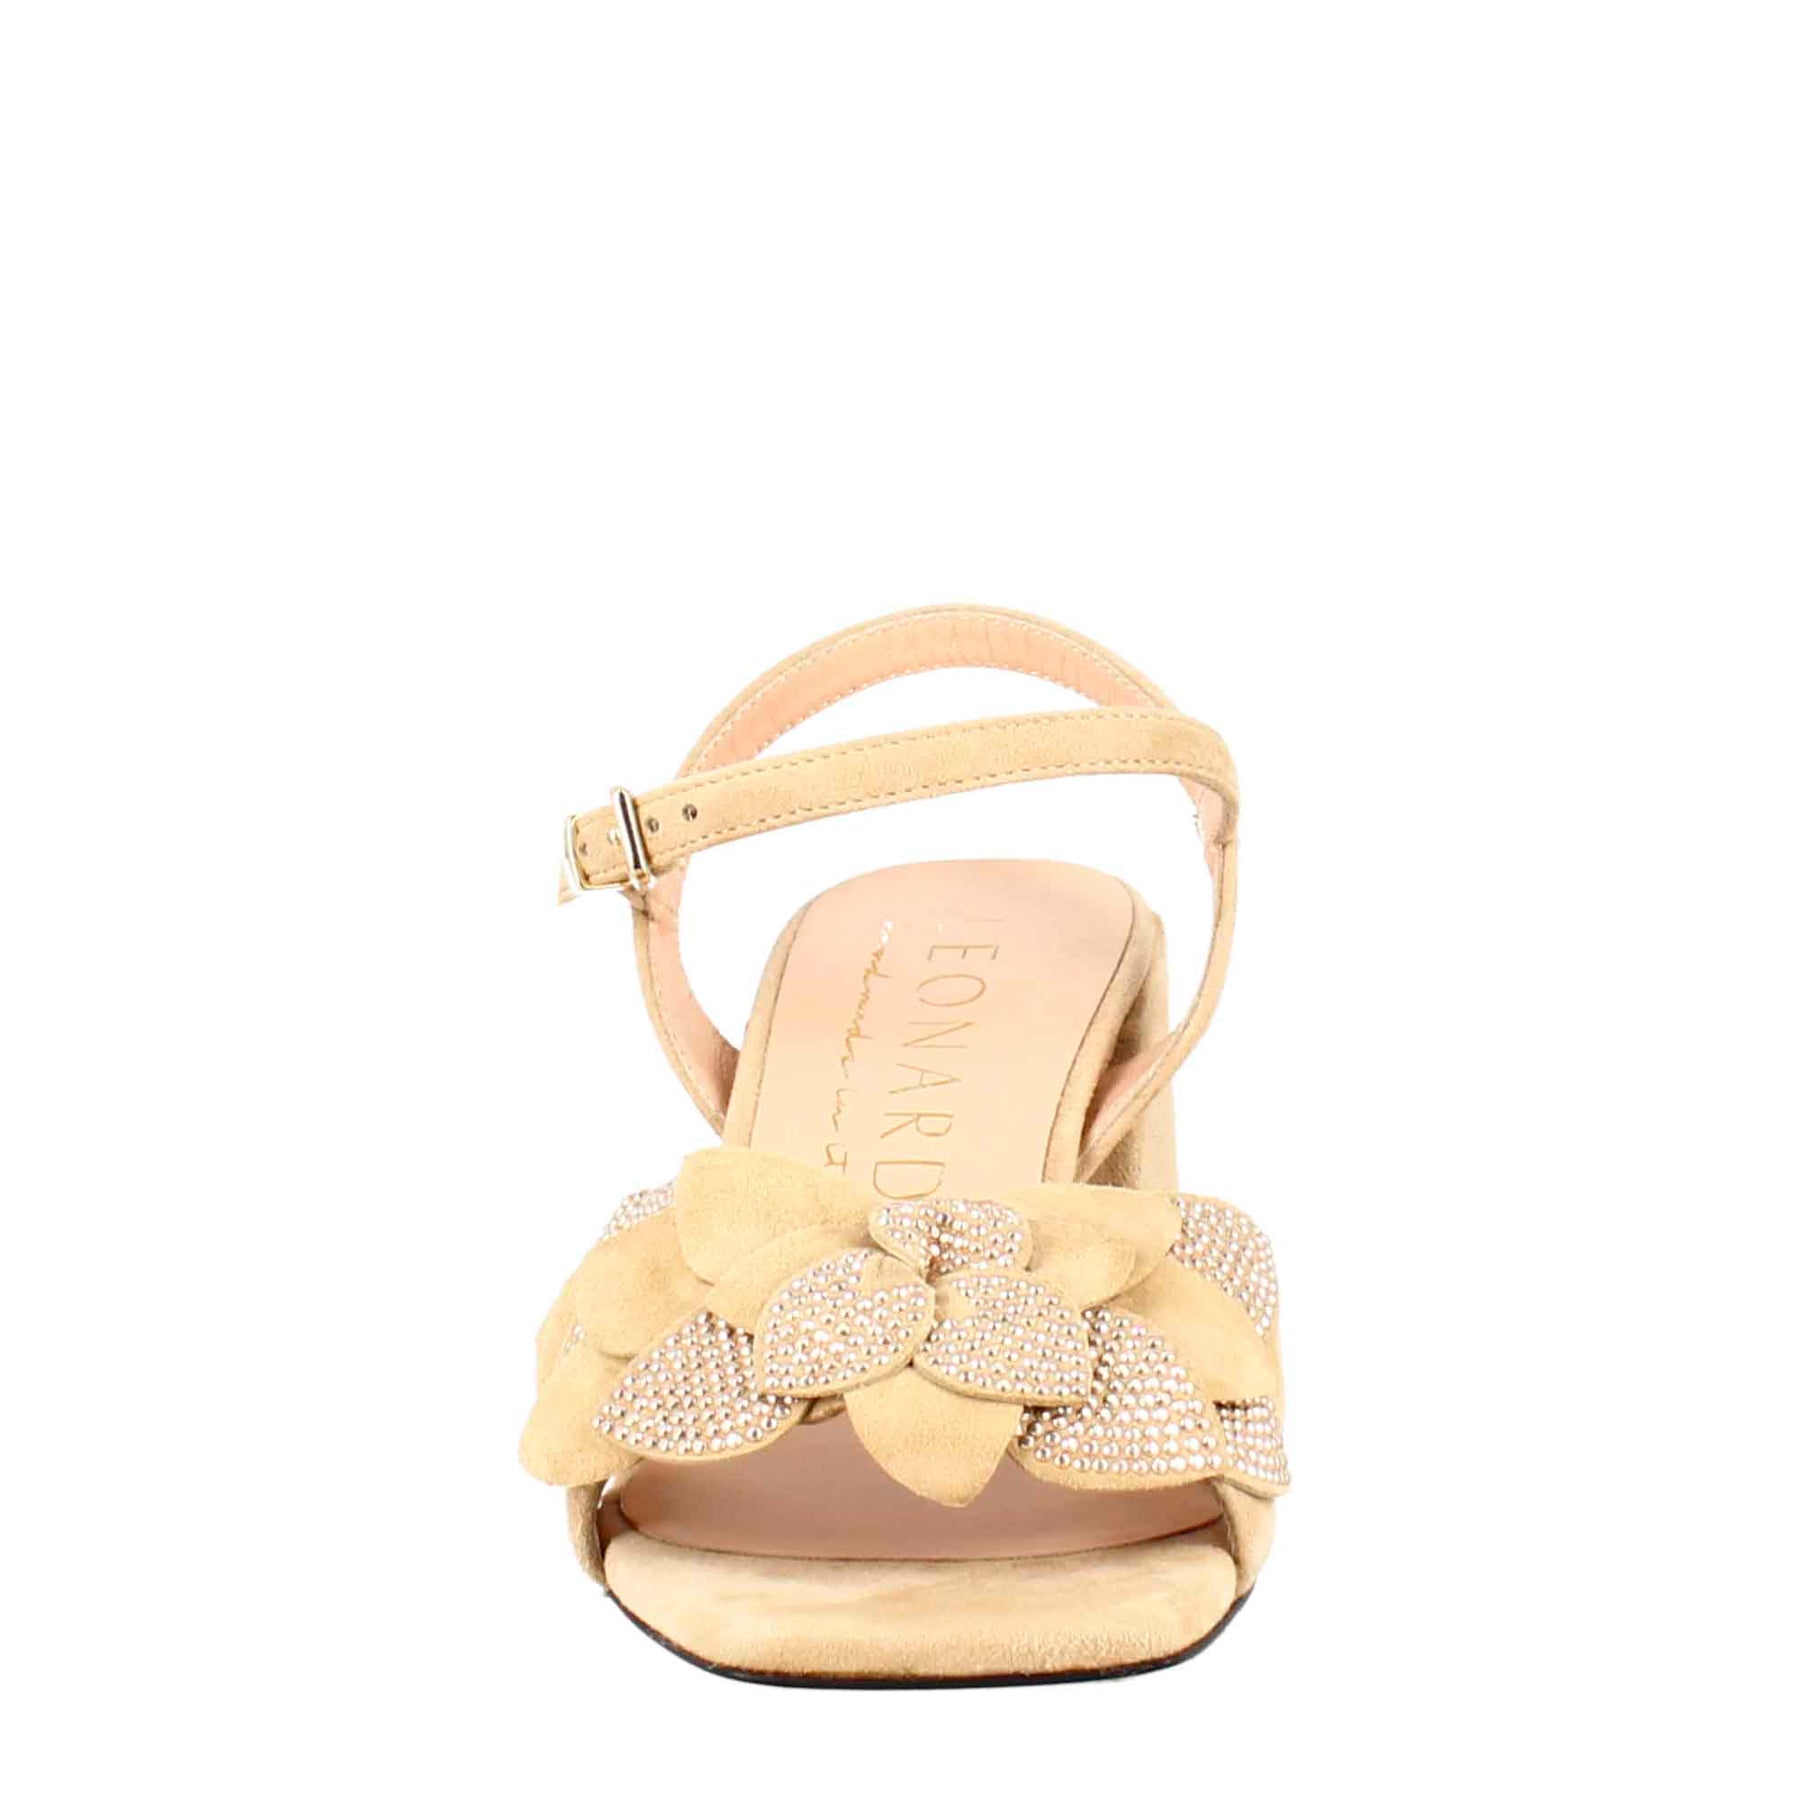 Women's sandal in beige suede with applied glitter